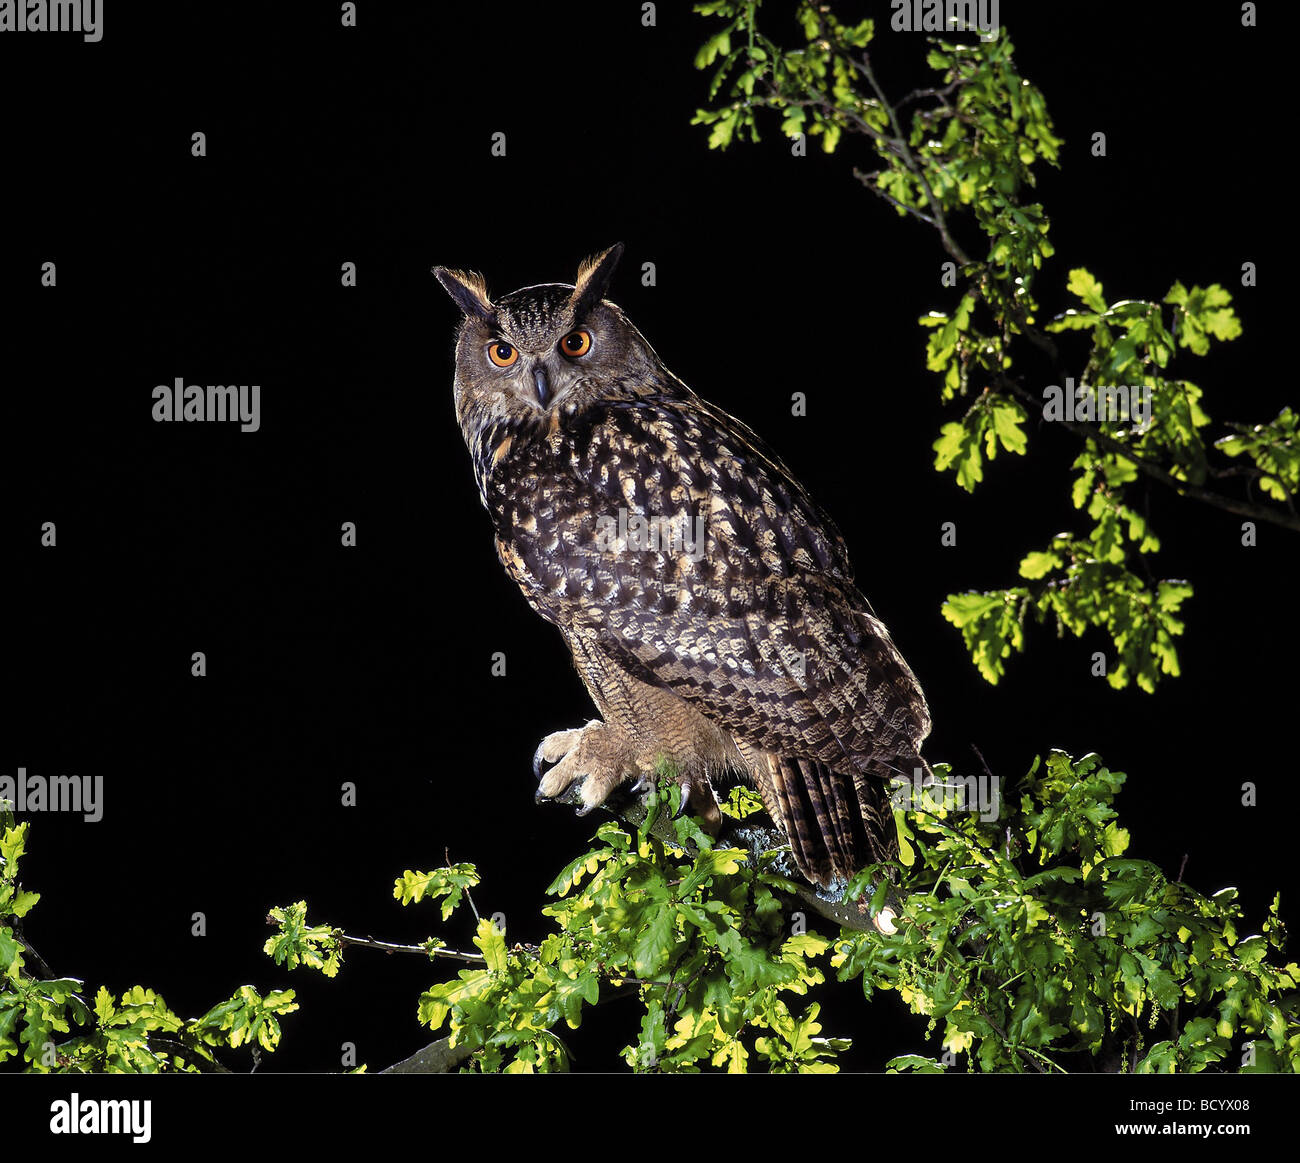 eagle owl / Bubo bubo Stock Photo